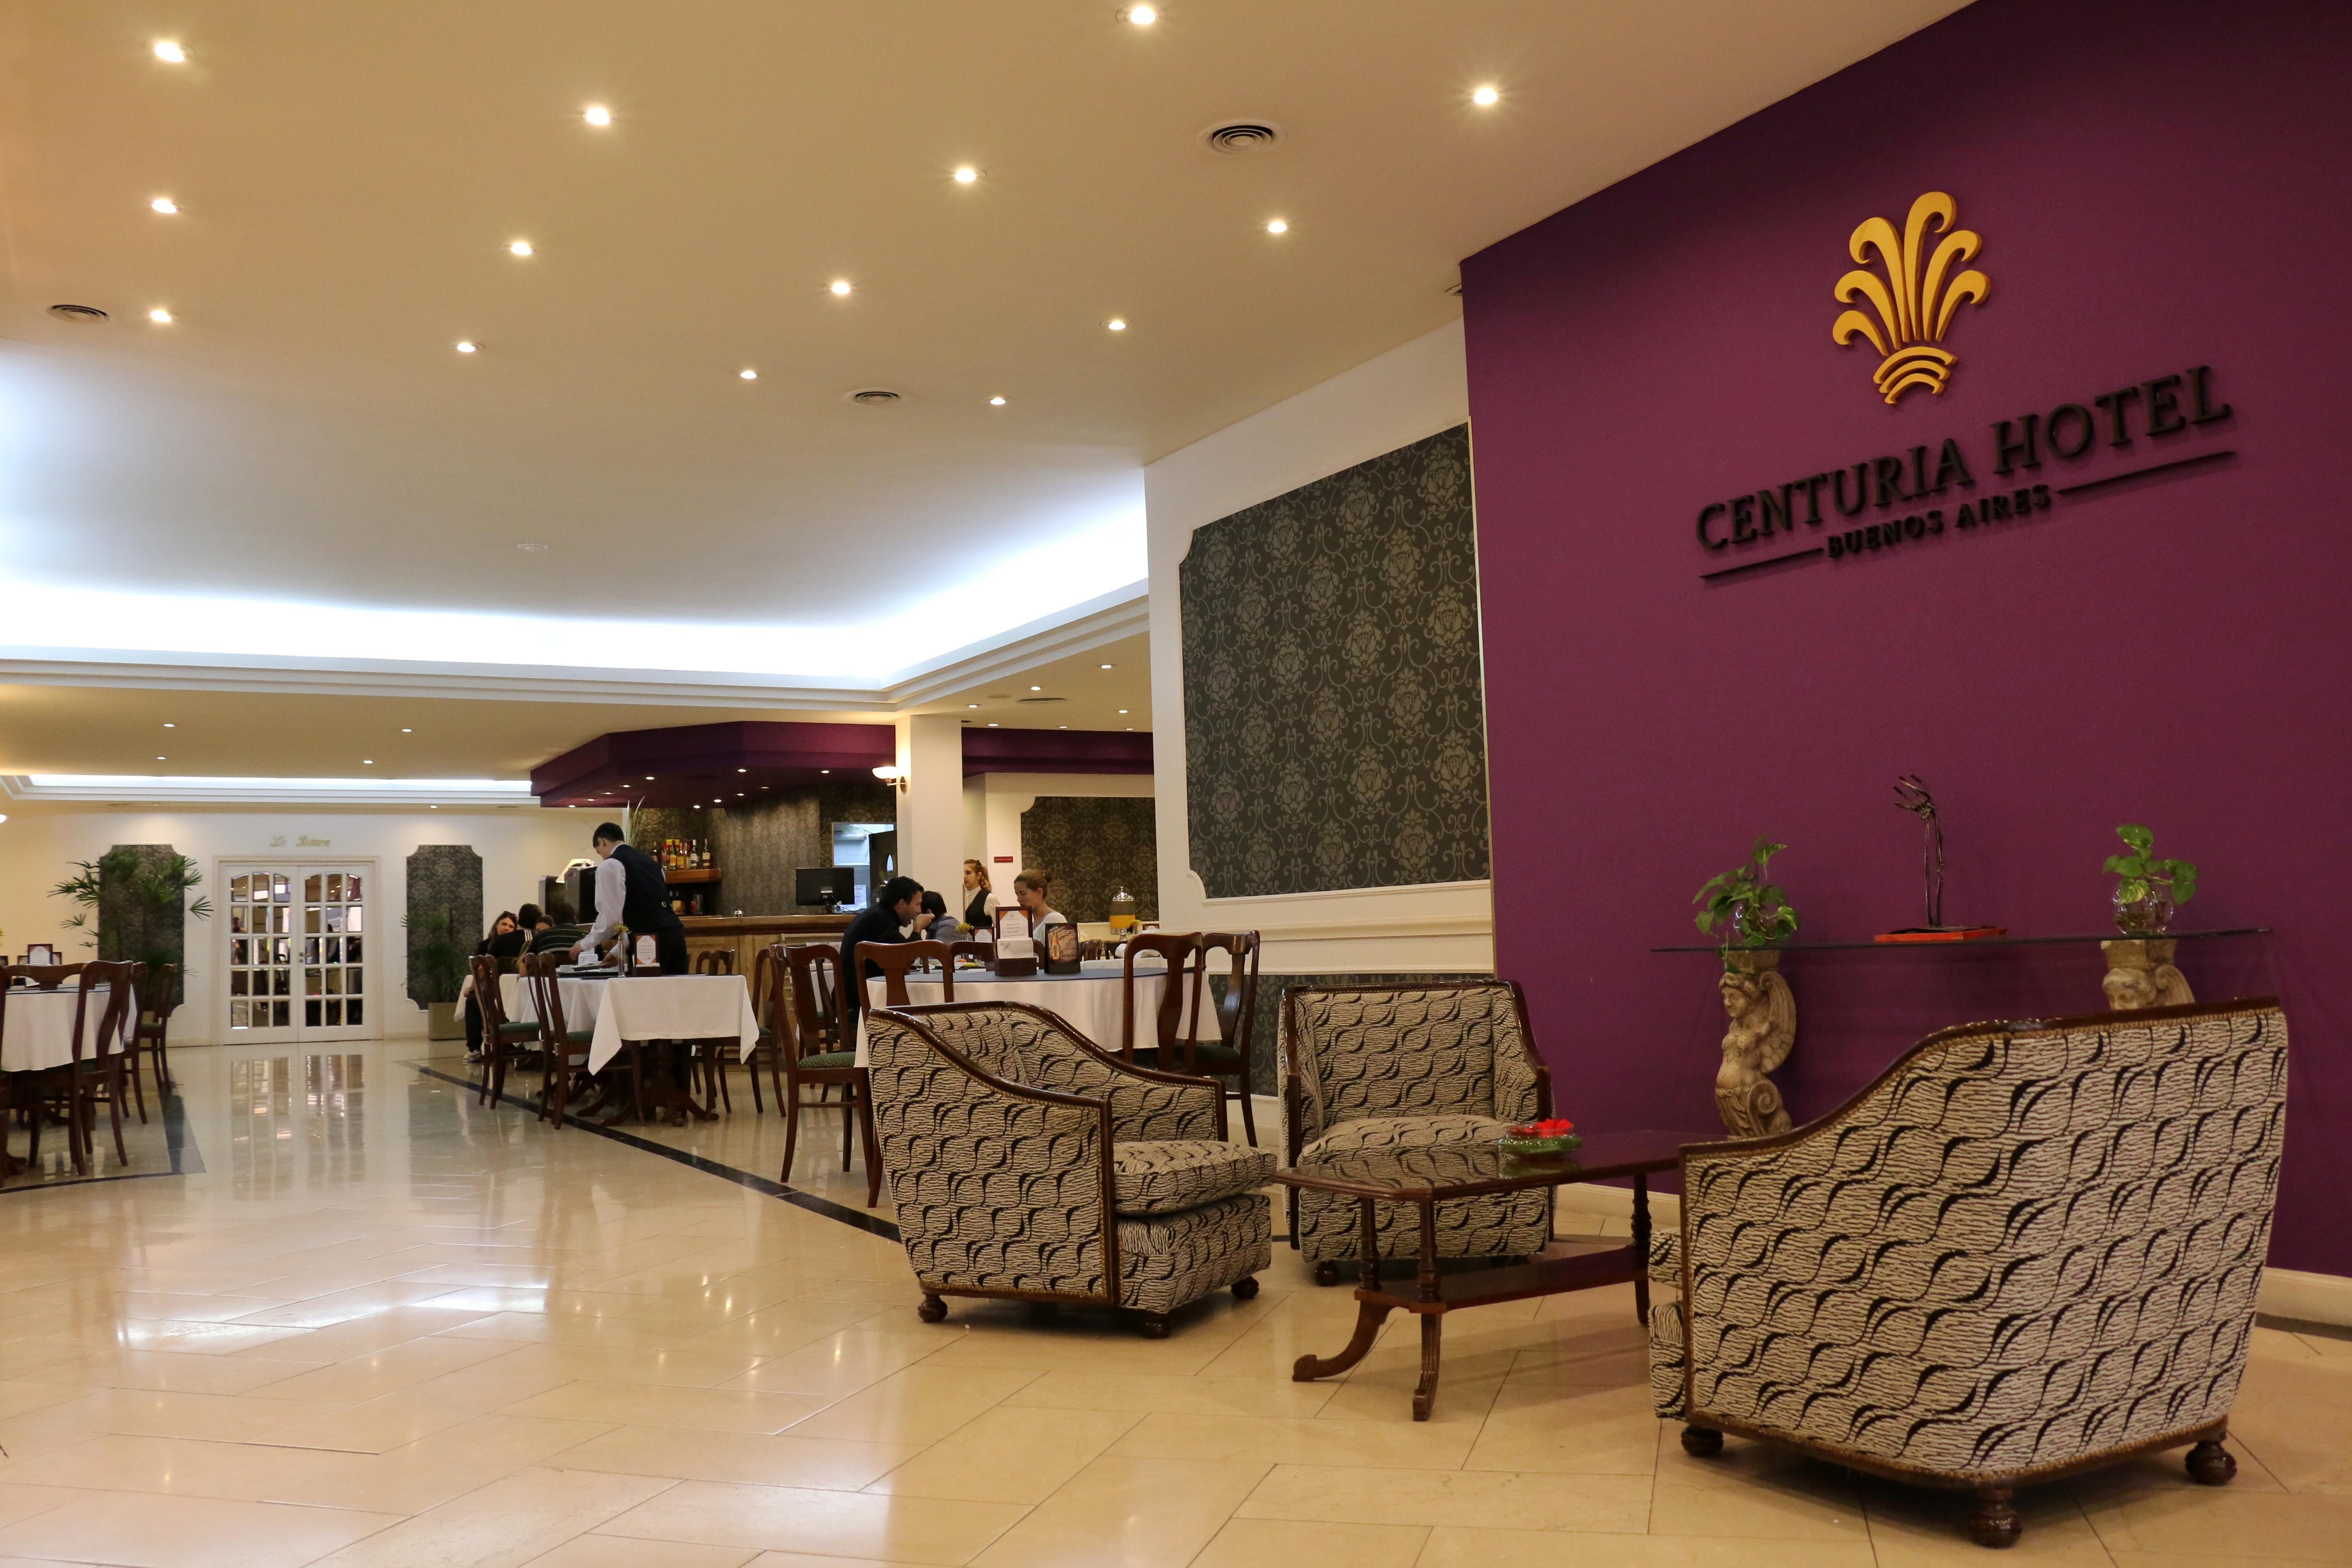 Centuria Hotel